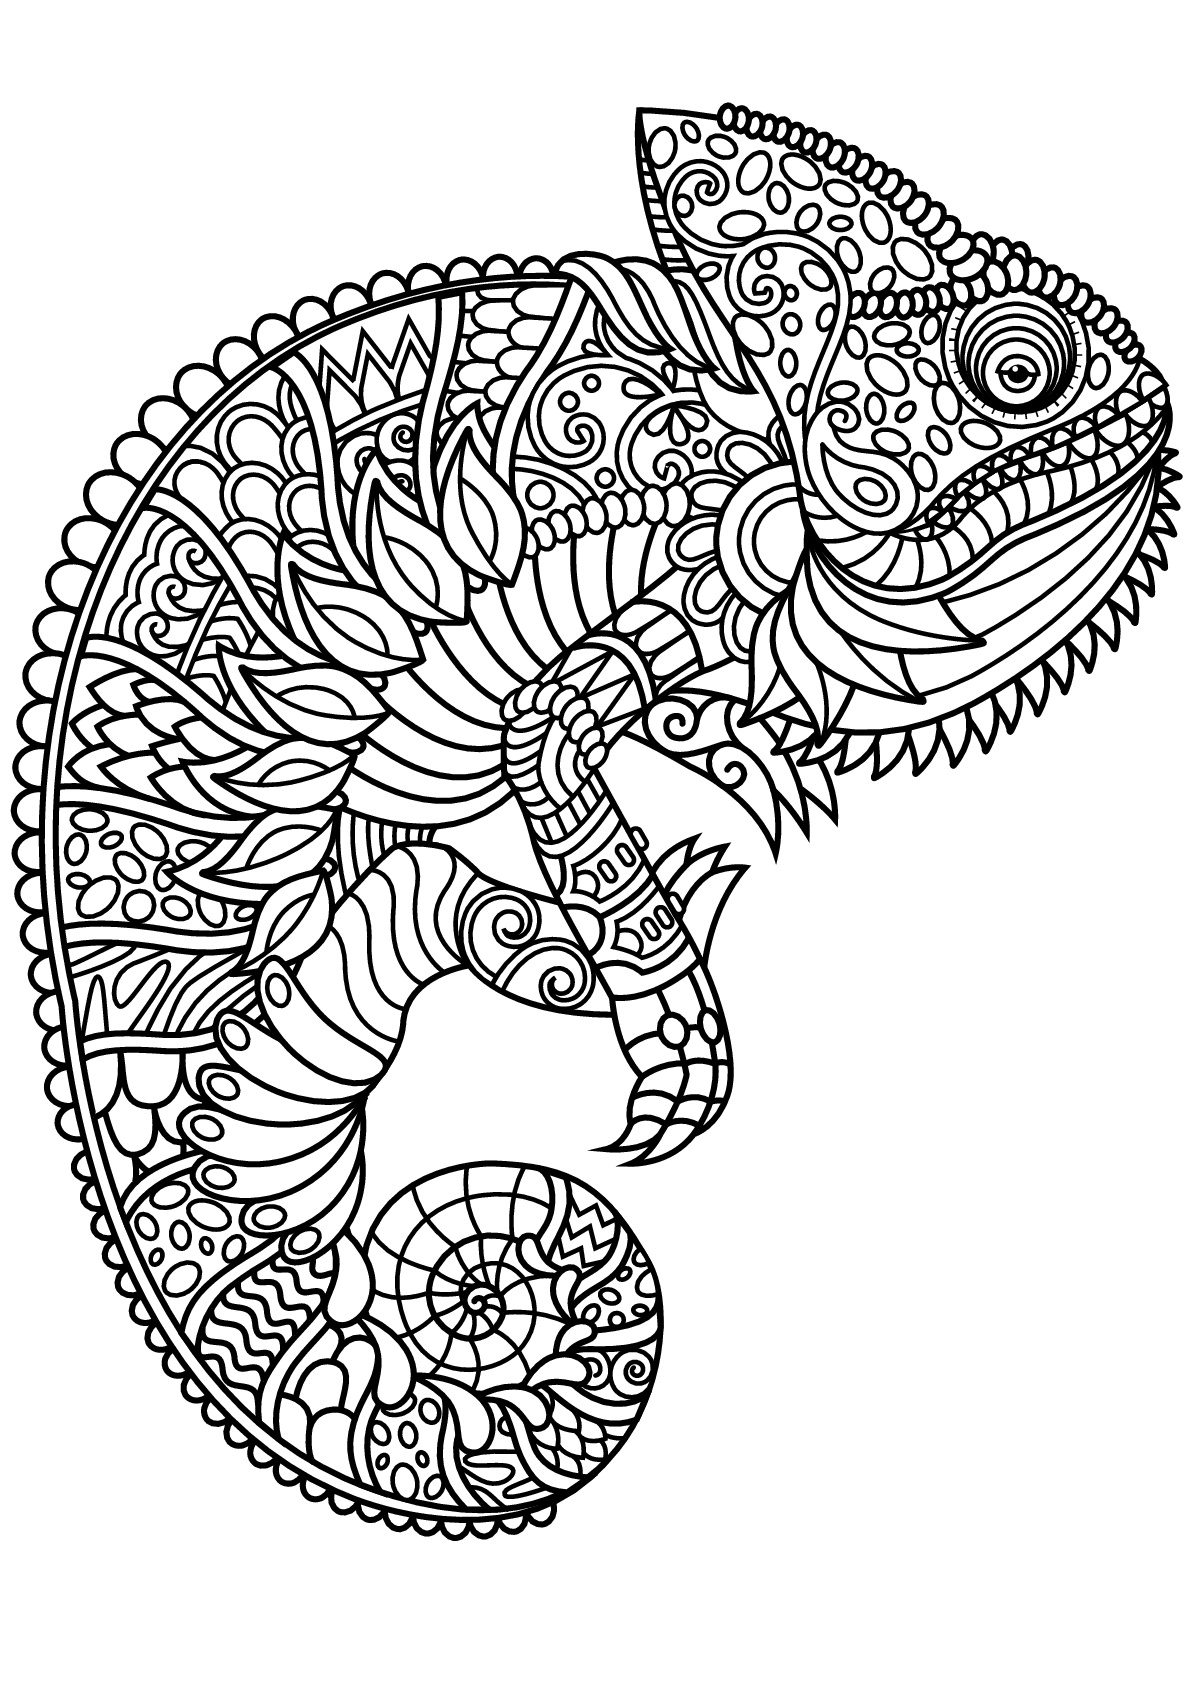 Free book chameleon - Chameleons & lizards Adult Coloring ...